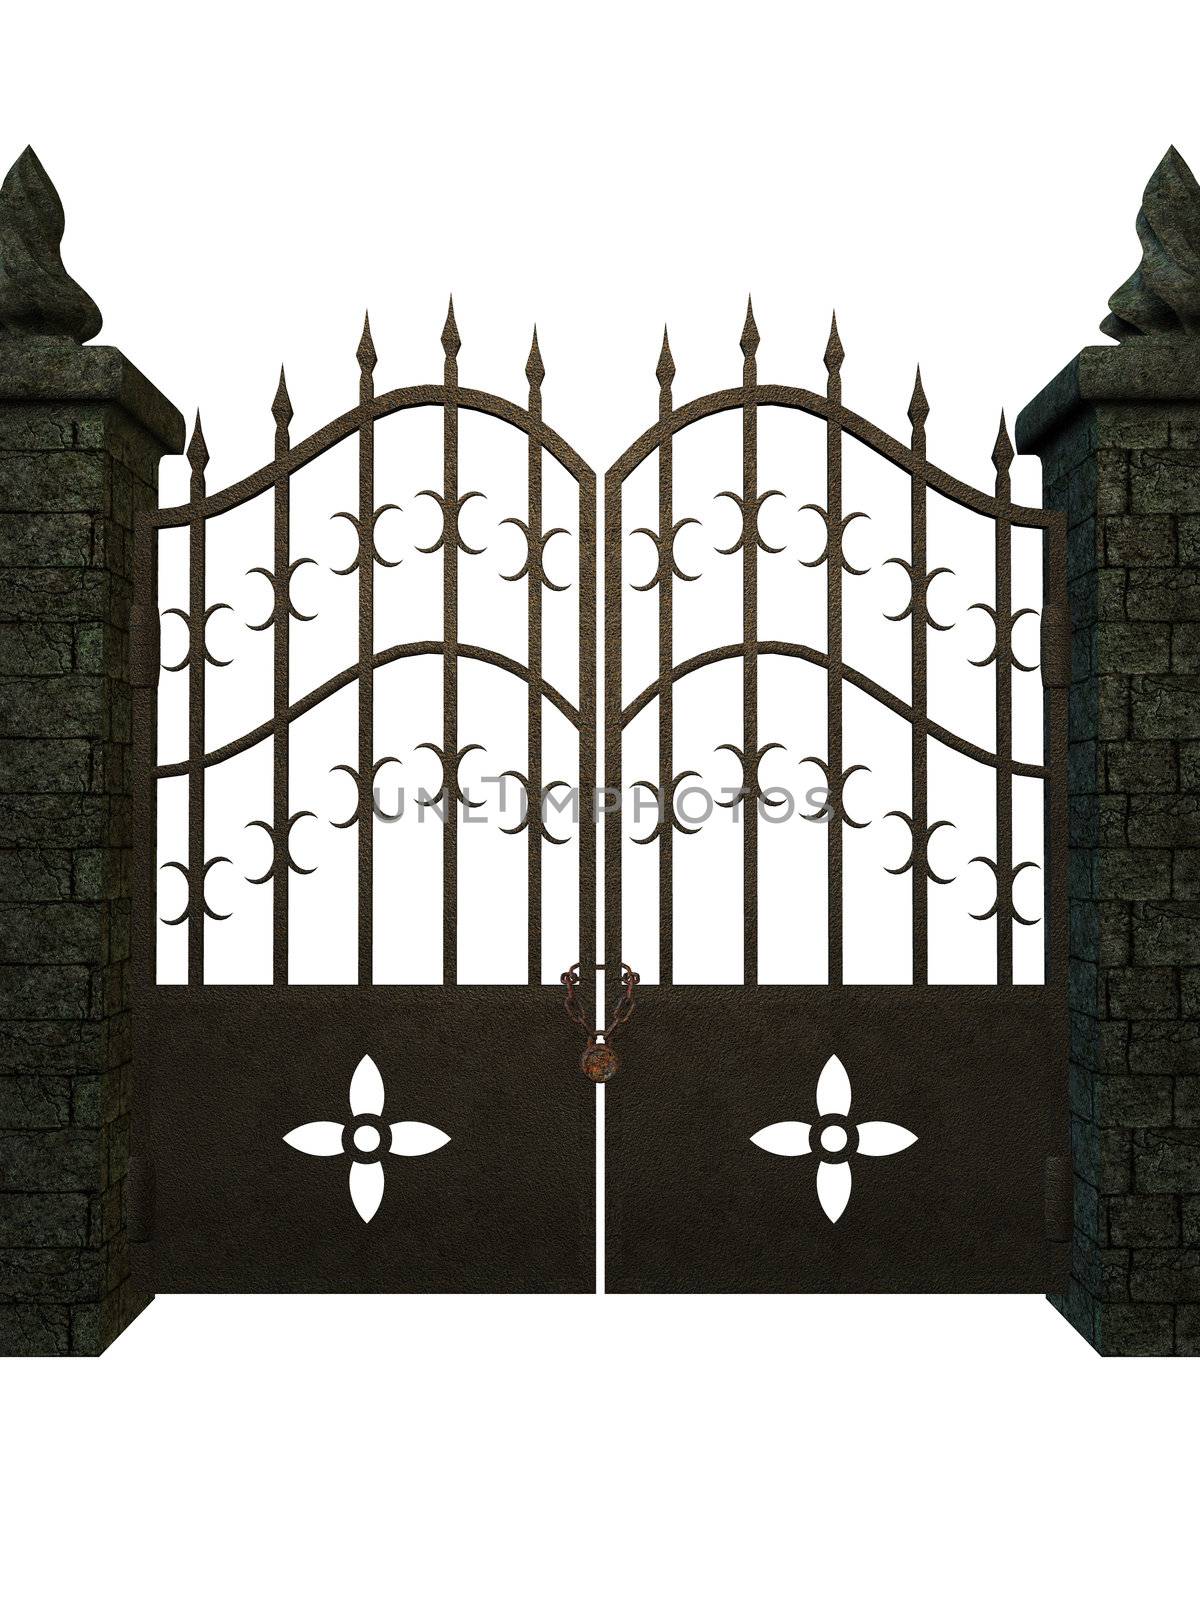 Gate by kathygold